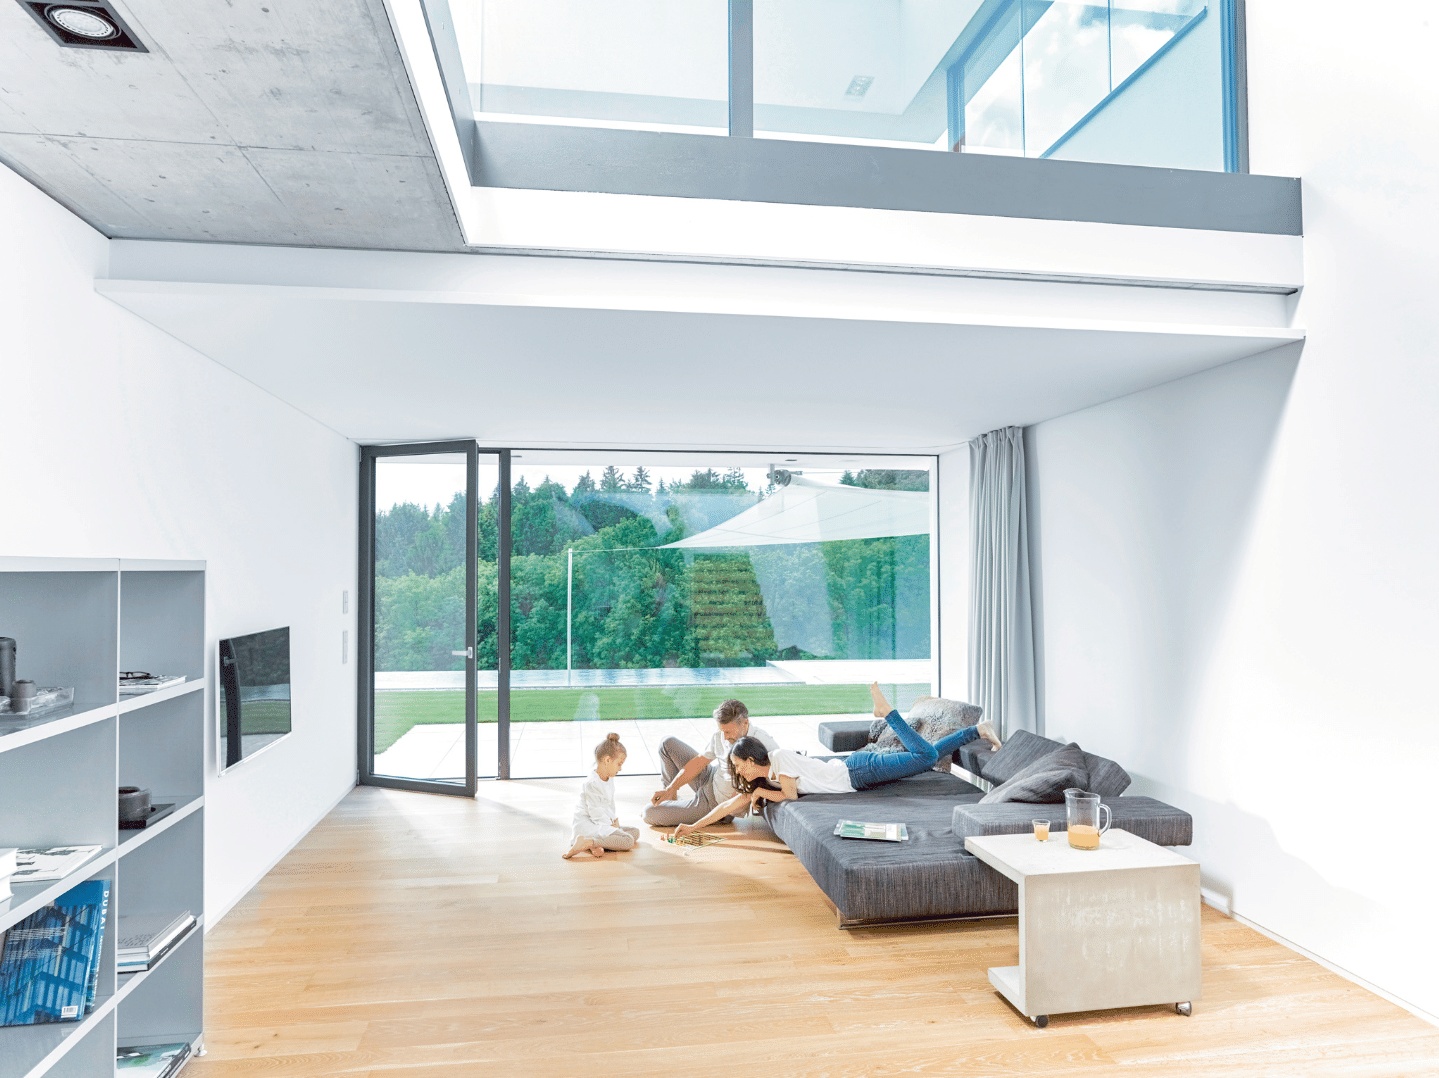 Internorm zeigt ein großzügiges, modernes Wohnzimmer mit Glaswänden und einer Terrassentür.